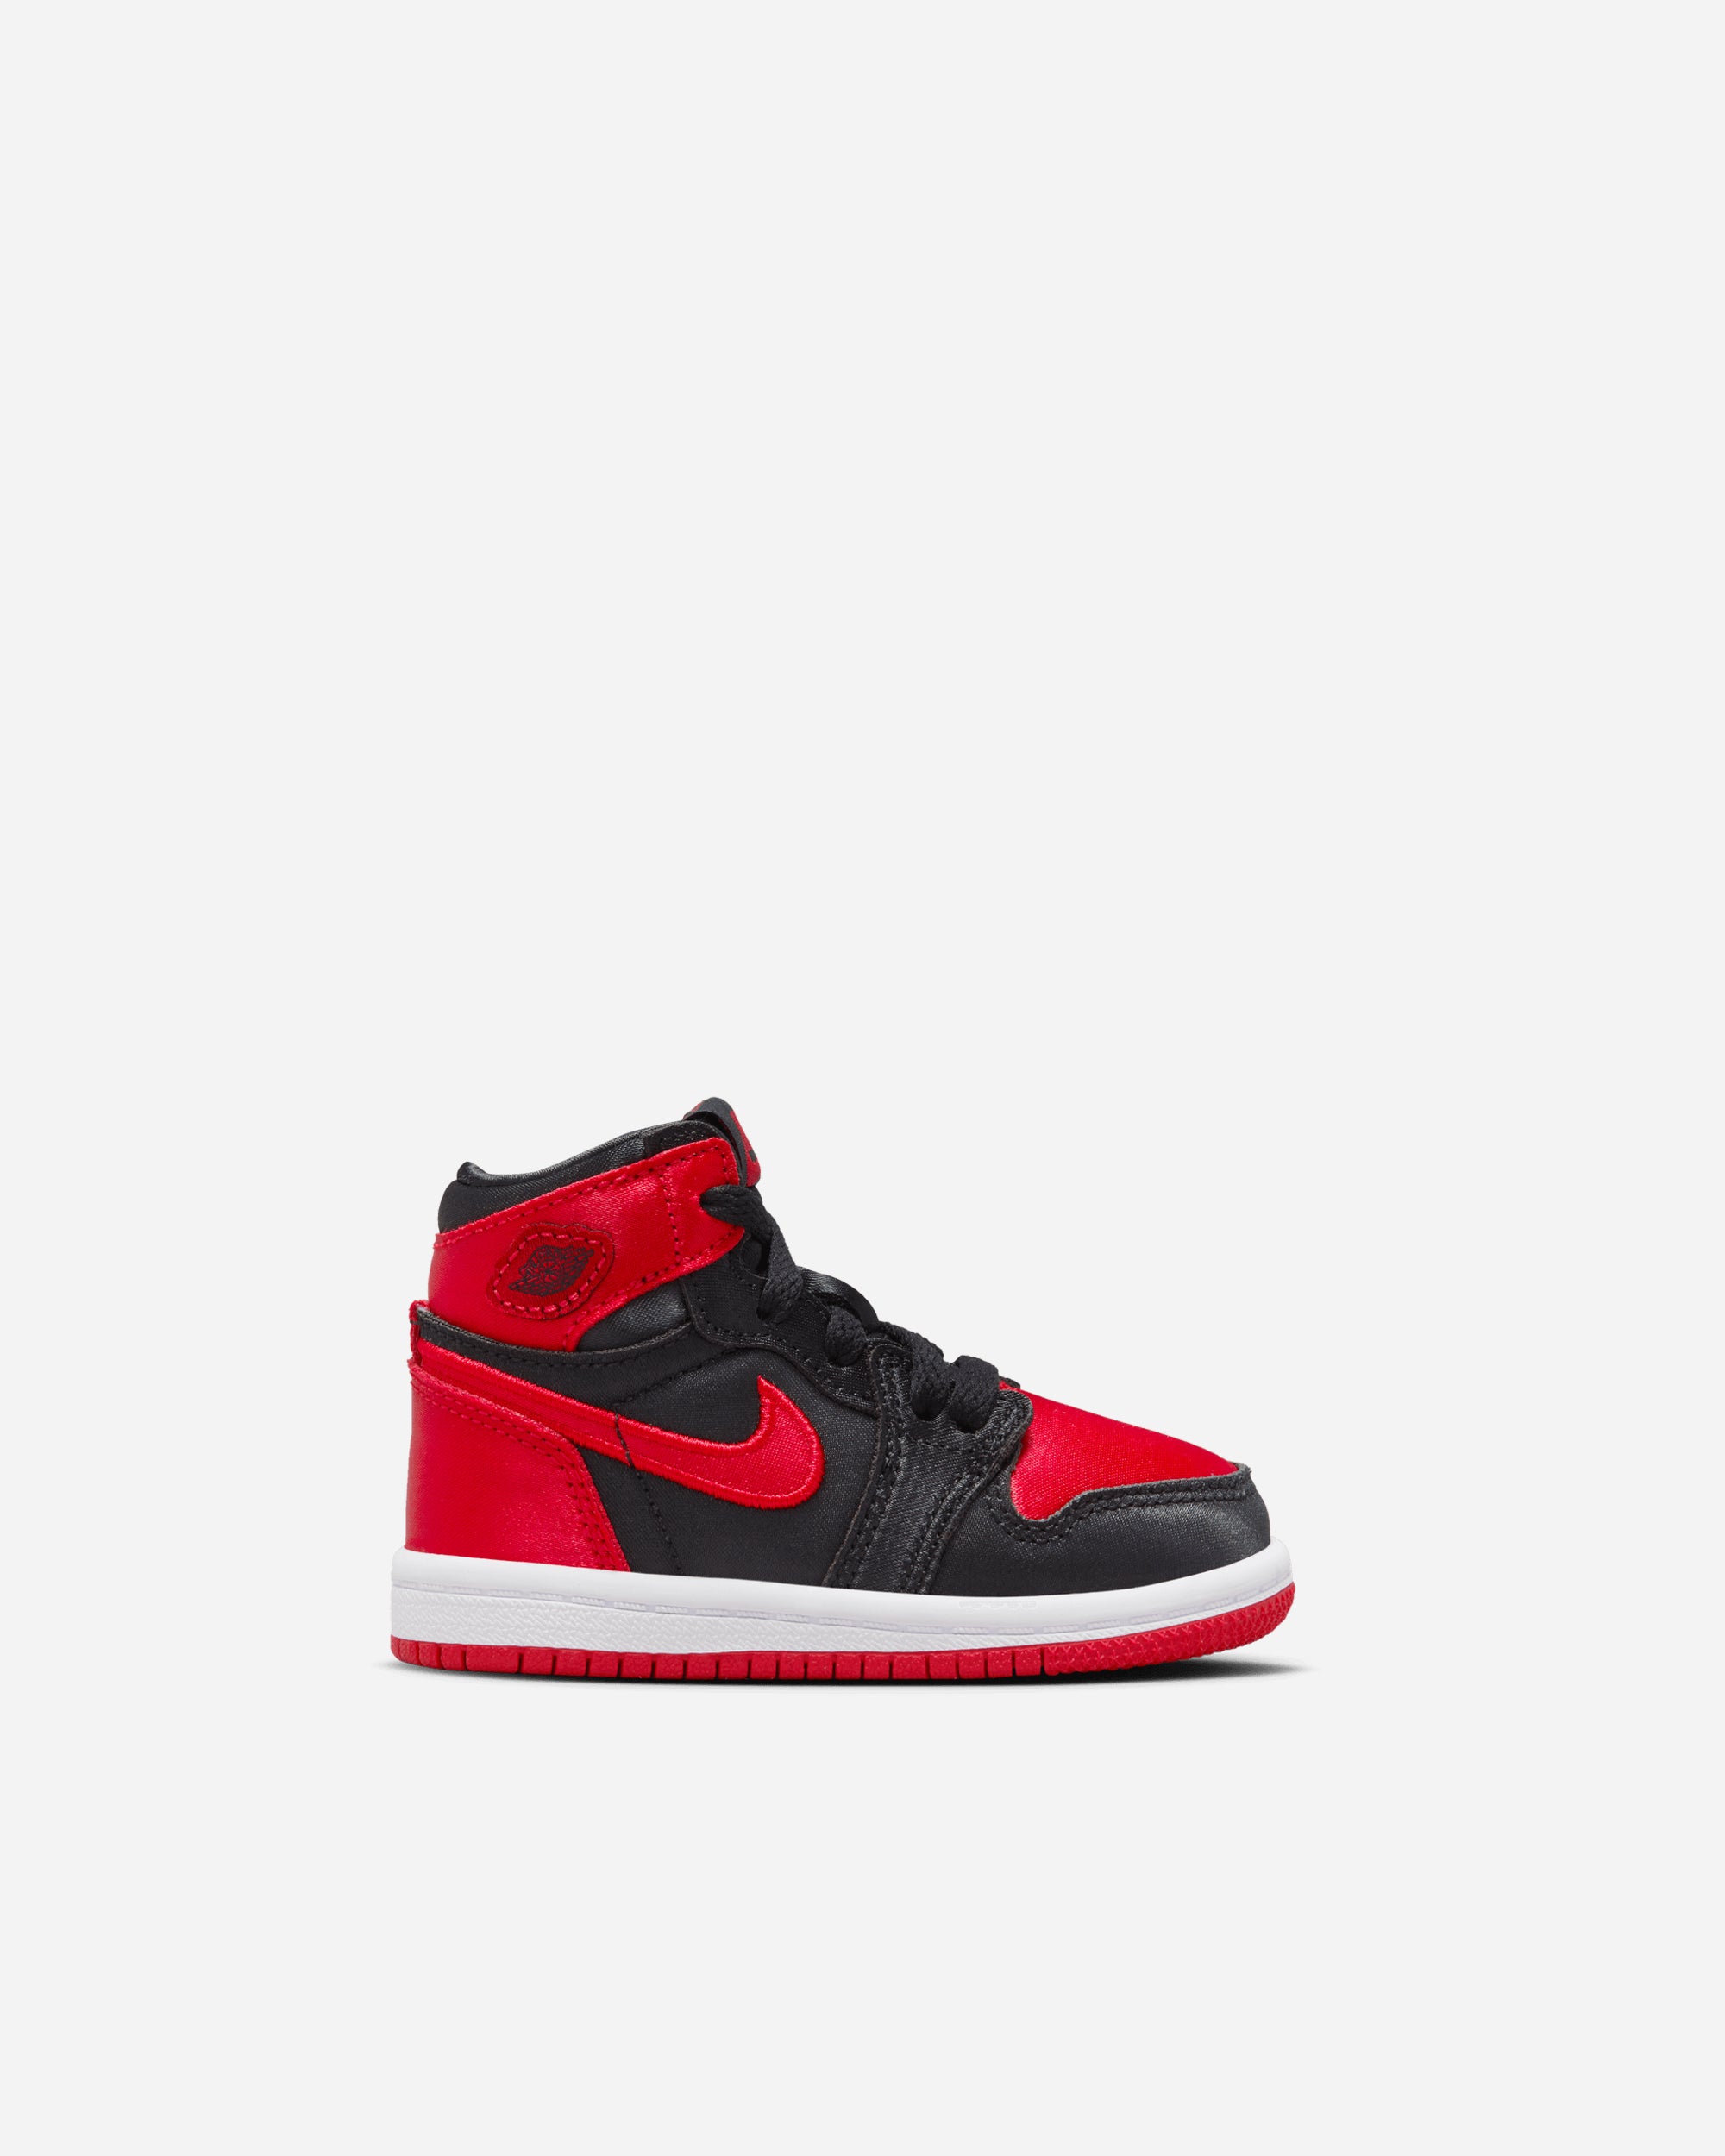 Jordan Brand Jordan 1 Retro High OG 'Satin Bred' (Toddler) BLACK/UNIVERSITY RED-WHITE FD5305-061